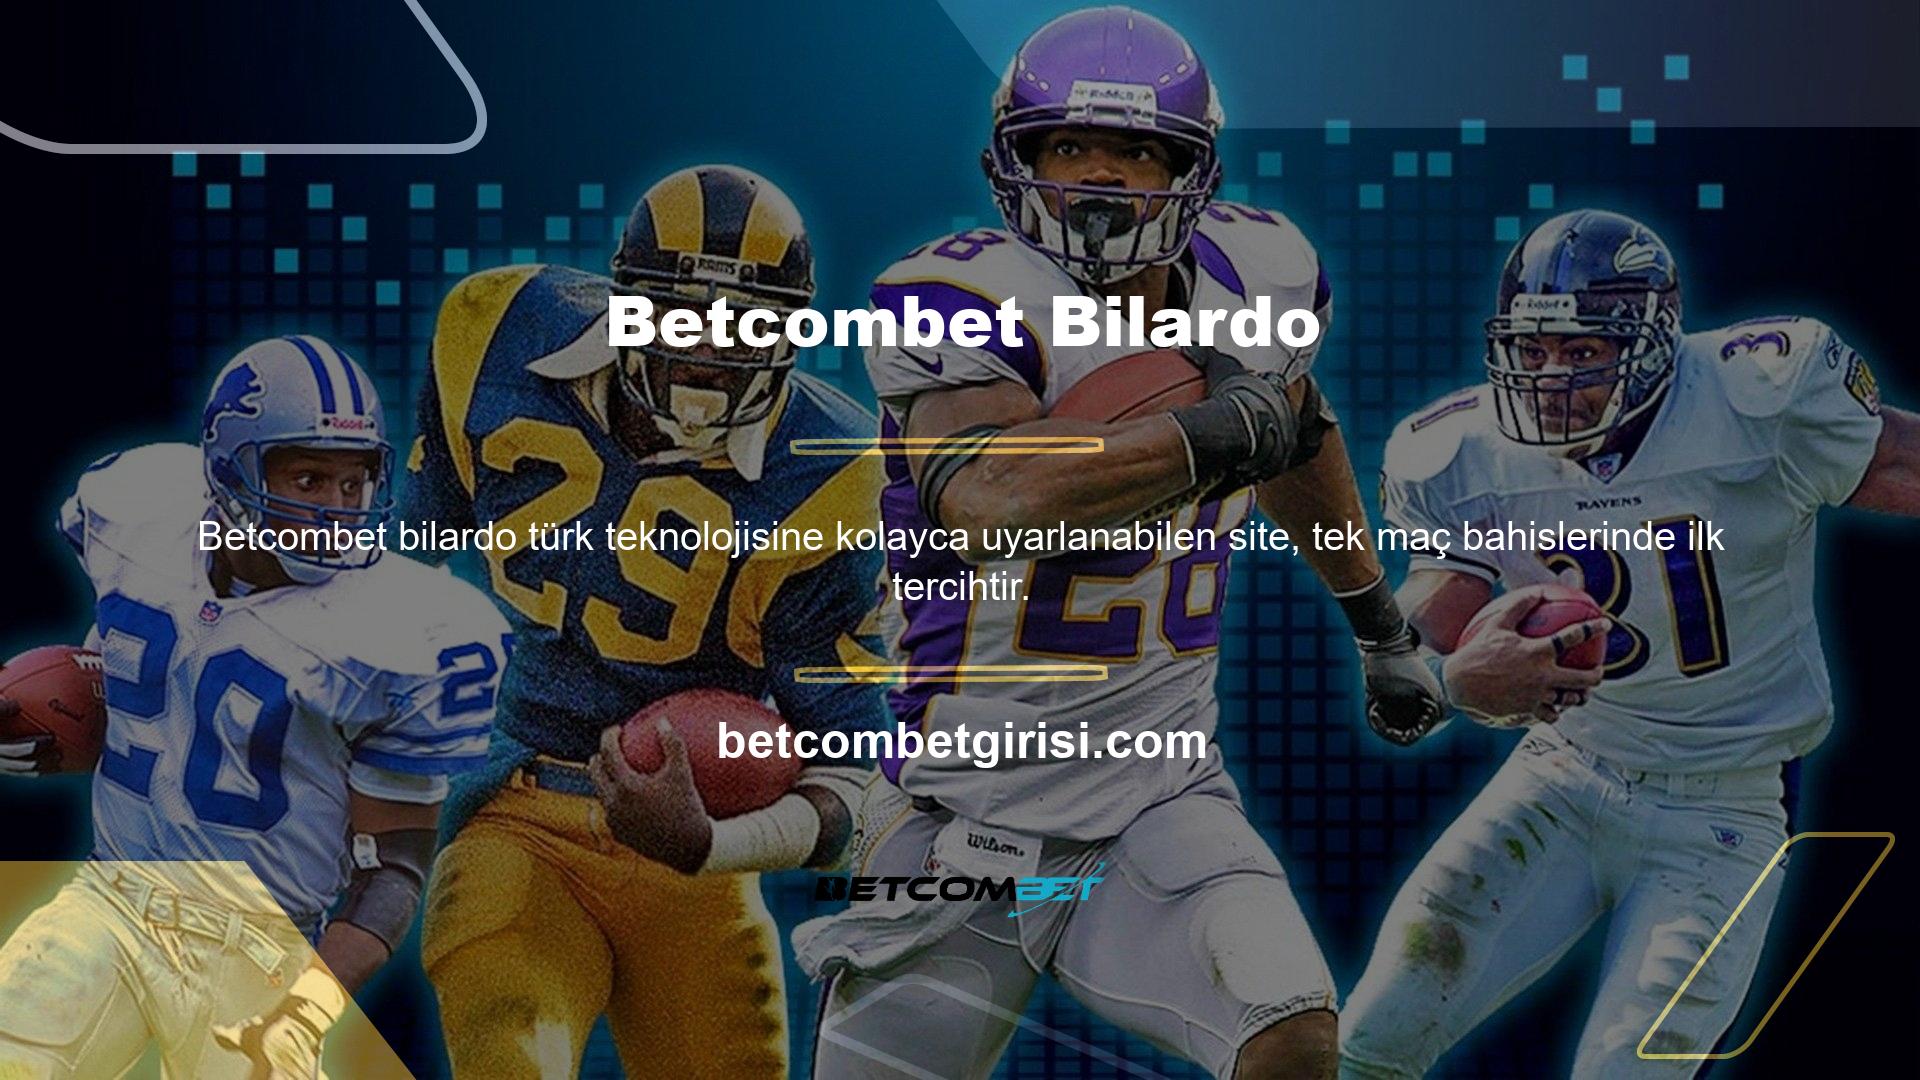 Betcombet, tüm gereksinimleri karşılayan kapsamlı bir casino sitesidir